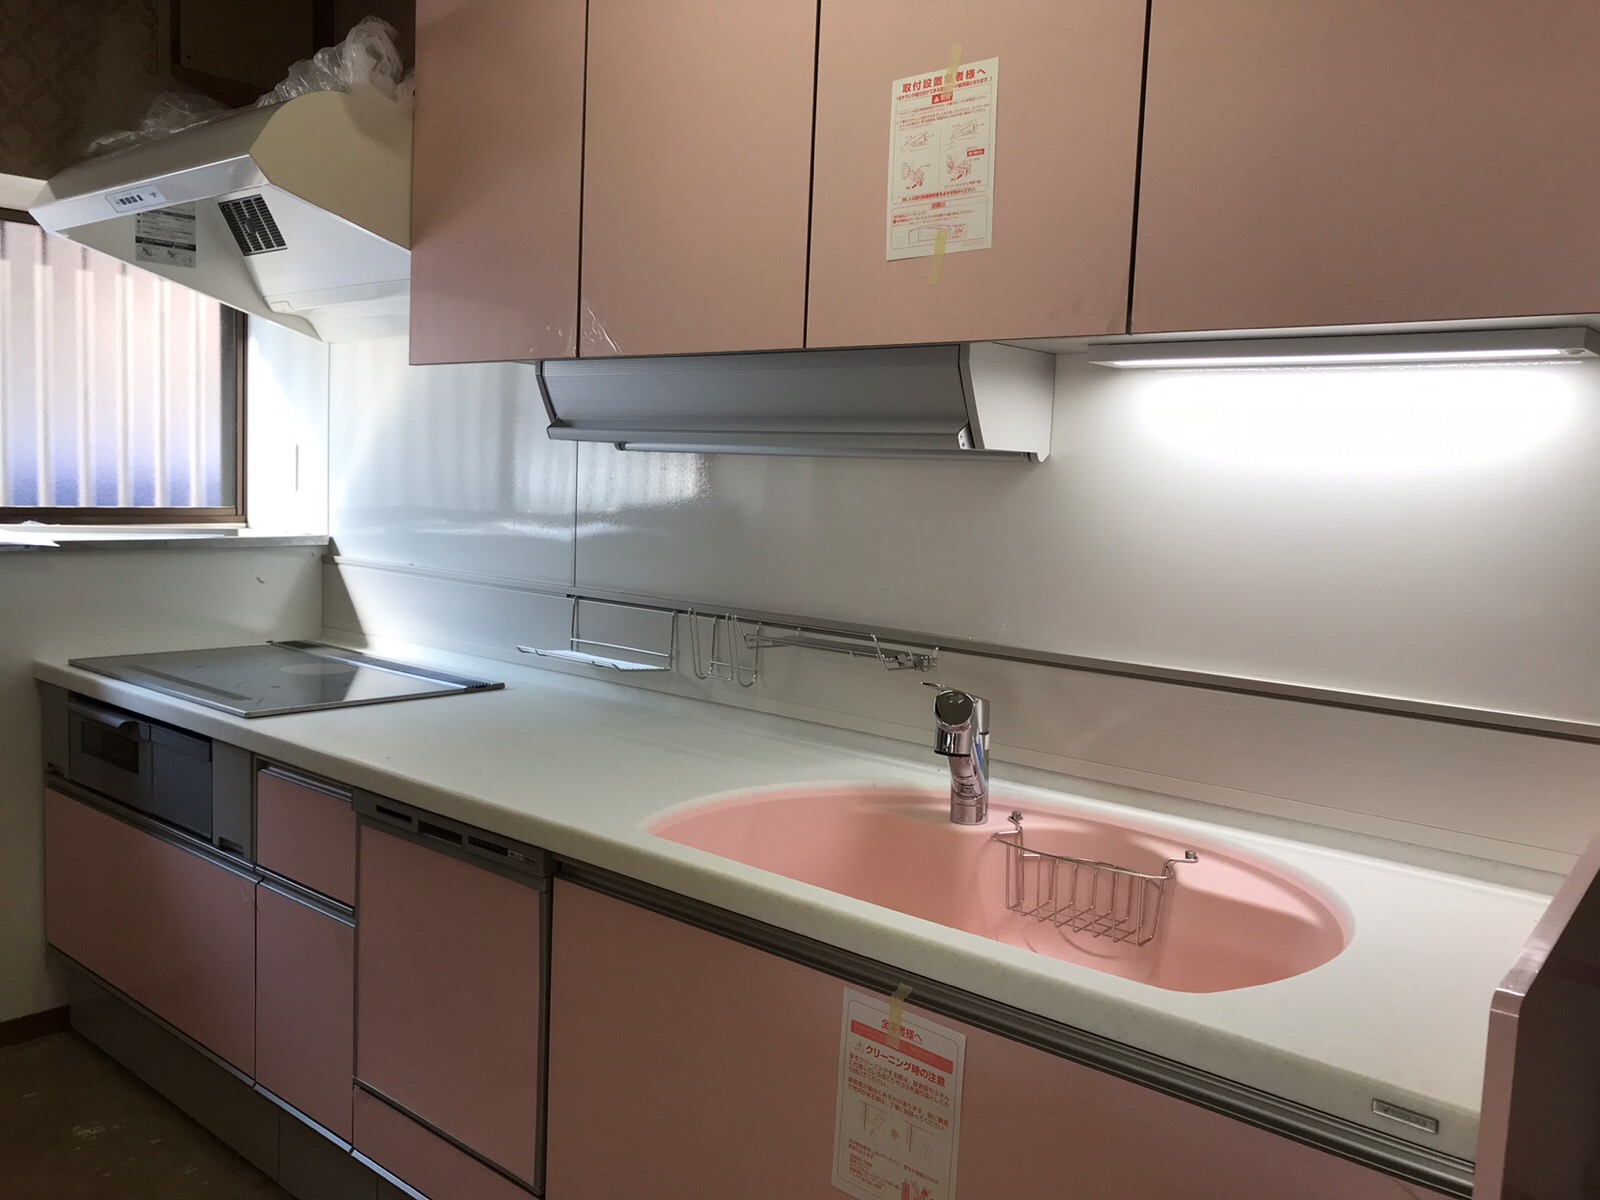 トクラスシステムキッチン設置 祝 かわいいピンク色の人造大理石マーブルシンクにお水が出ました 自宅絵画教室化リフォームスタートです No 10 幸せエネルギー研究所